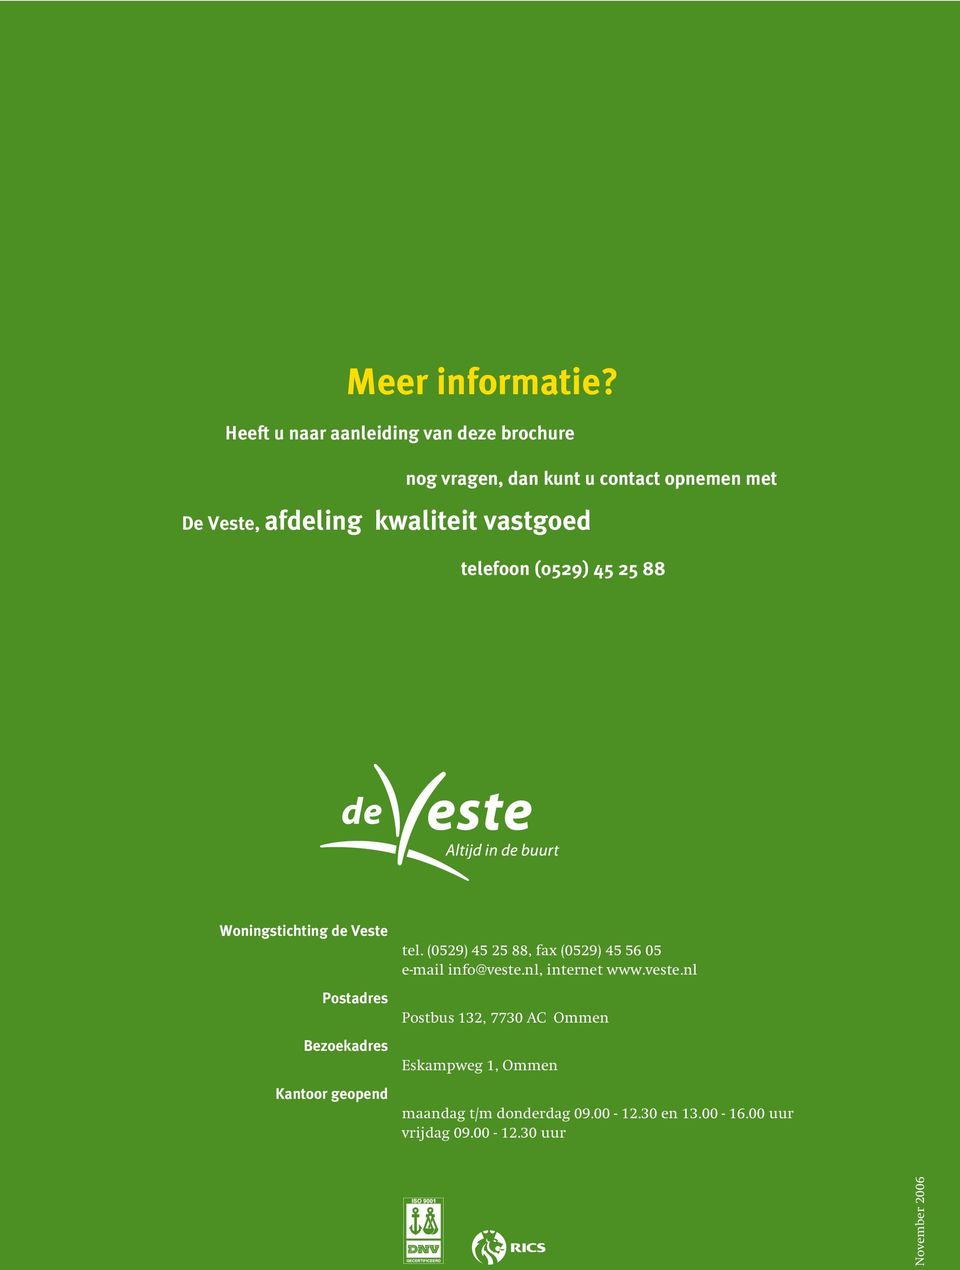 kwaliteit vastgoed telefoon (0529) 45 25 88 Woningstichting de Veste Postadres Bezoekadres Kantoor geopend tel.